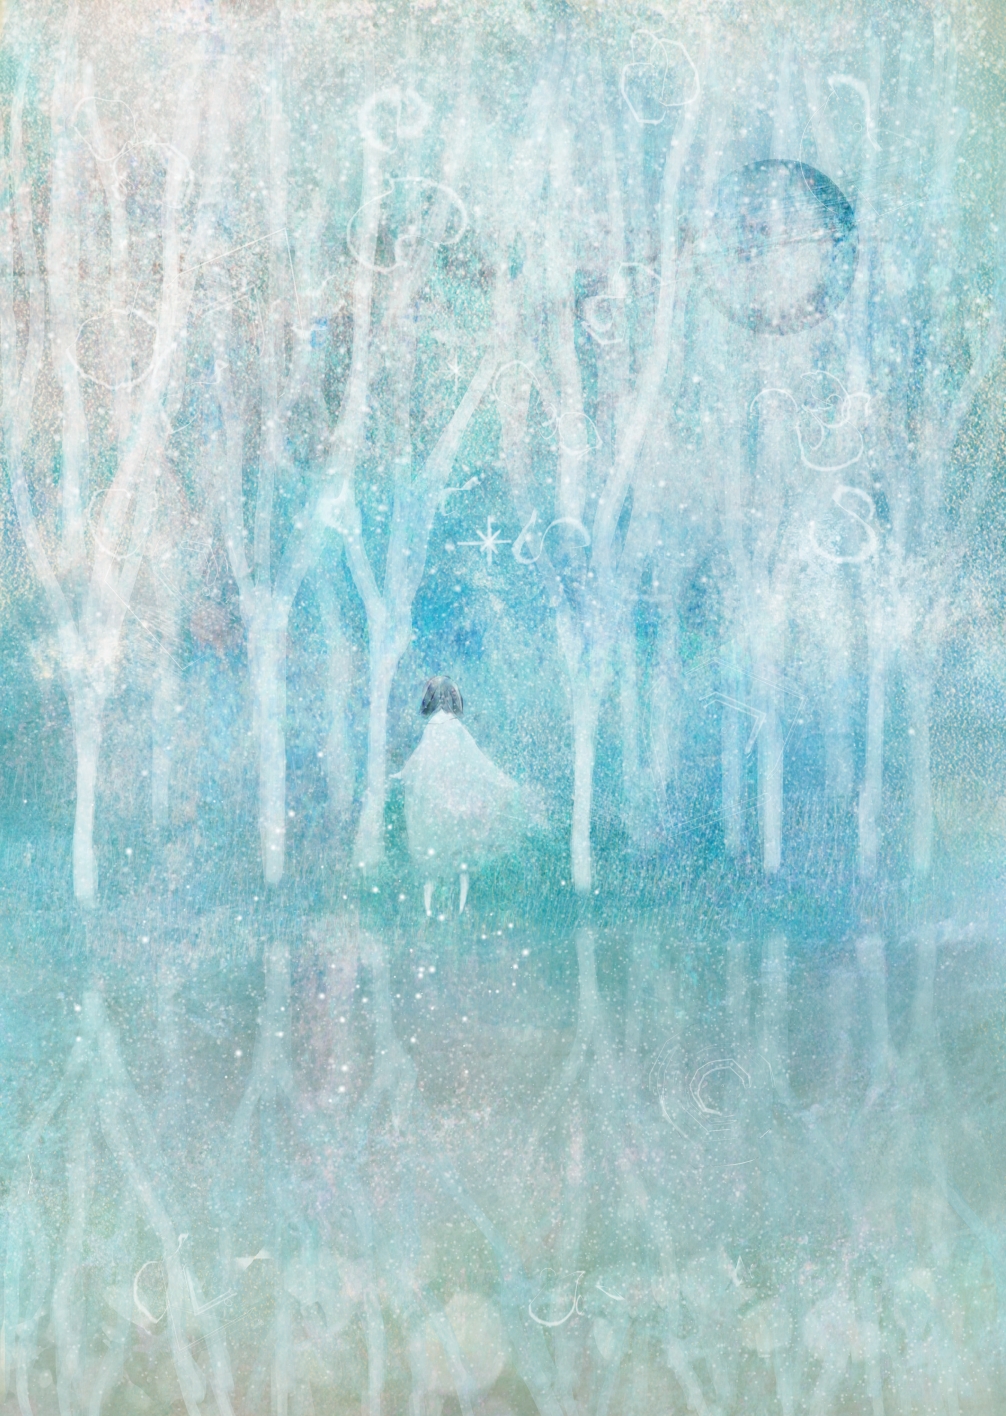 Фото Девушка стоит на зеркальной поверхности перед деревьями, art by katsuo